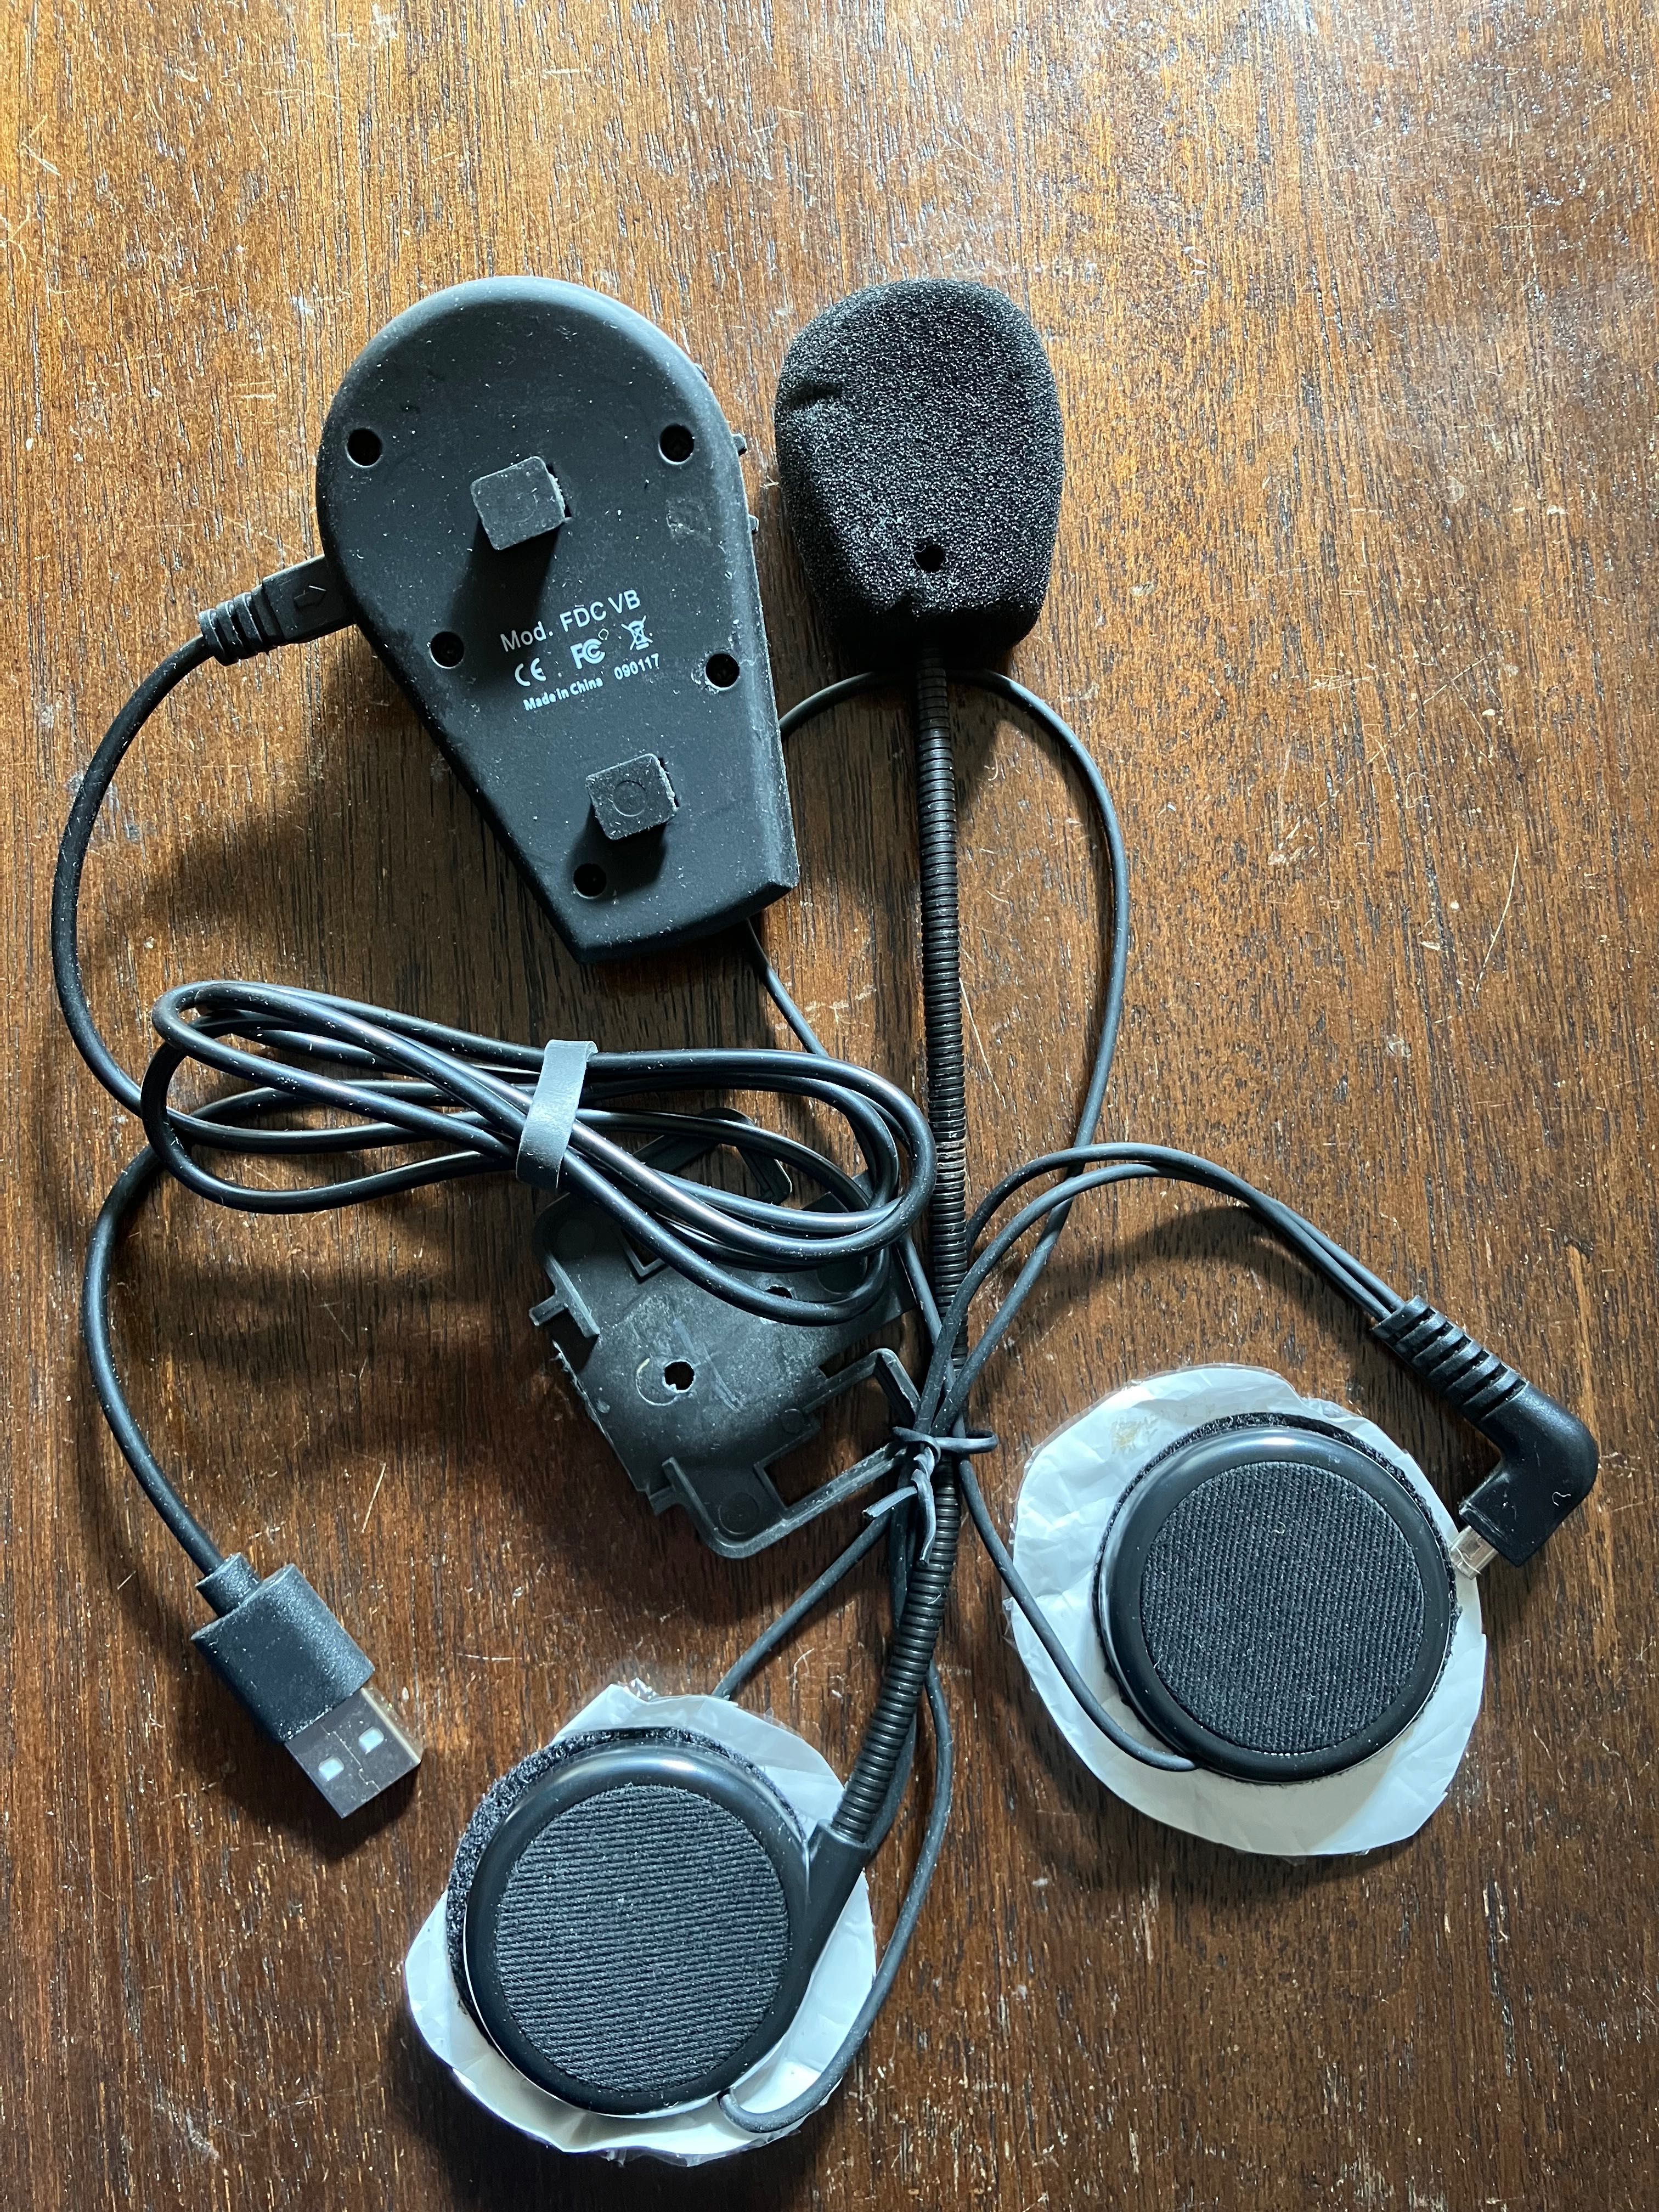 Inter phone capacete Bluetooth